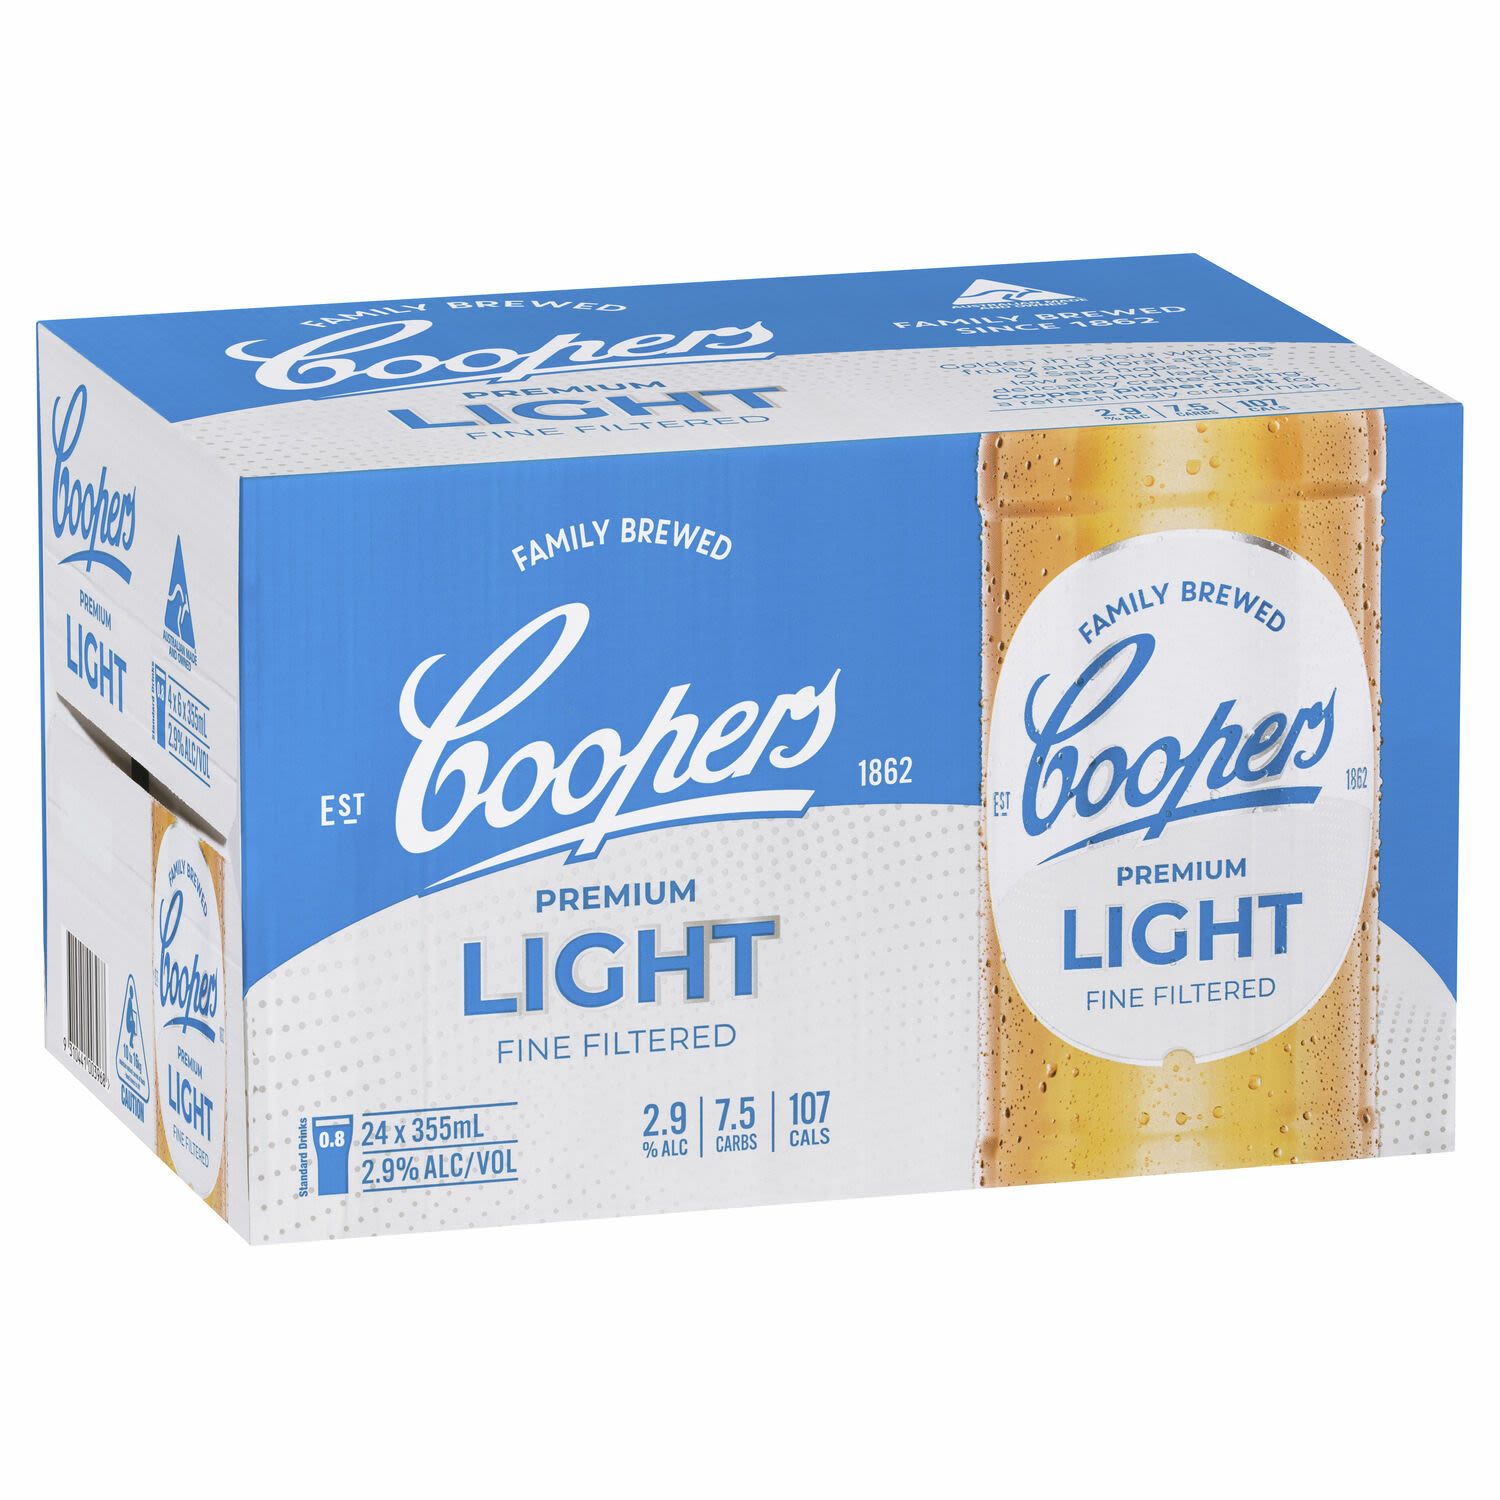 Coopers Premium Light Bottle 355mL 24 Pack